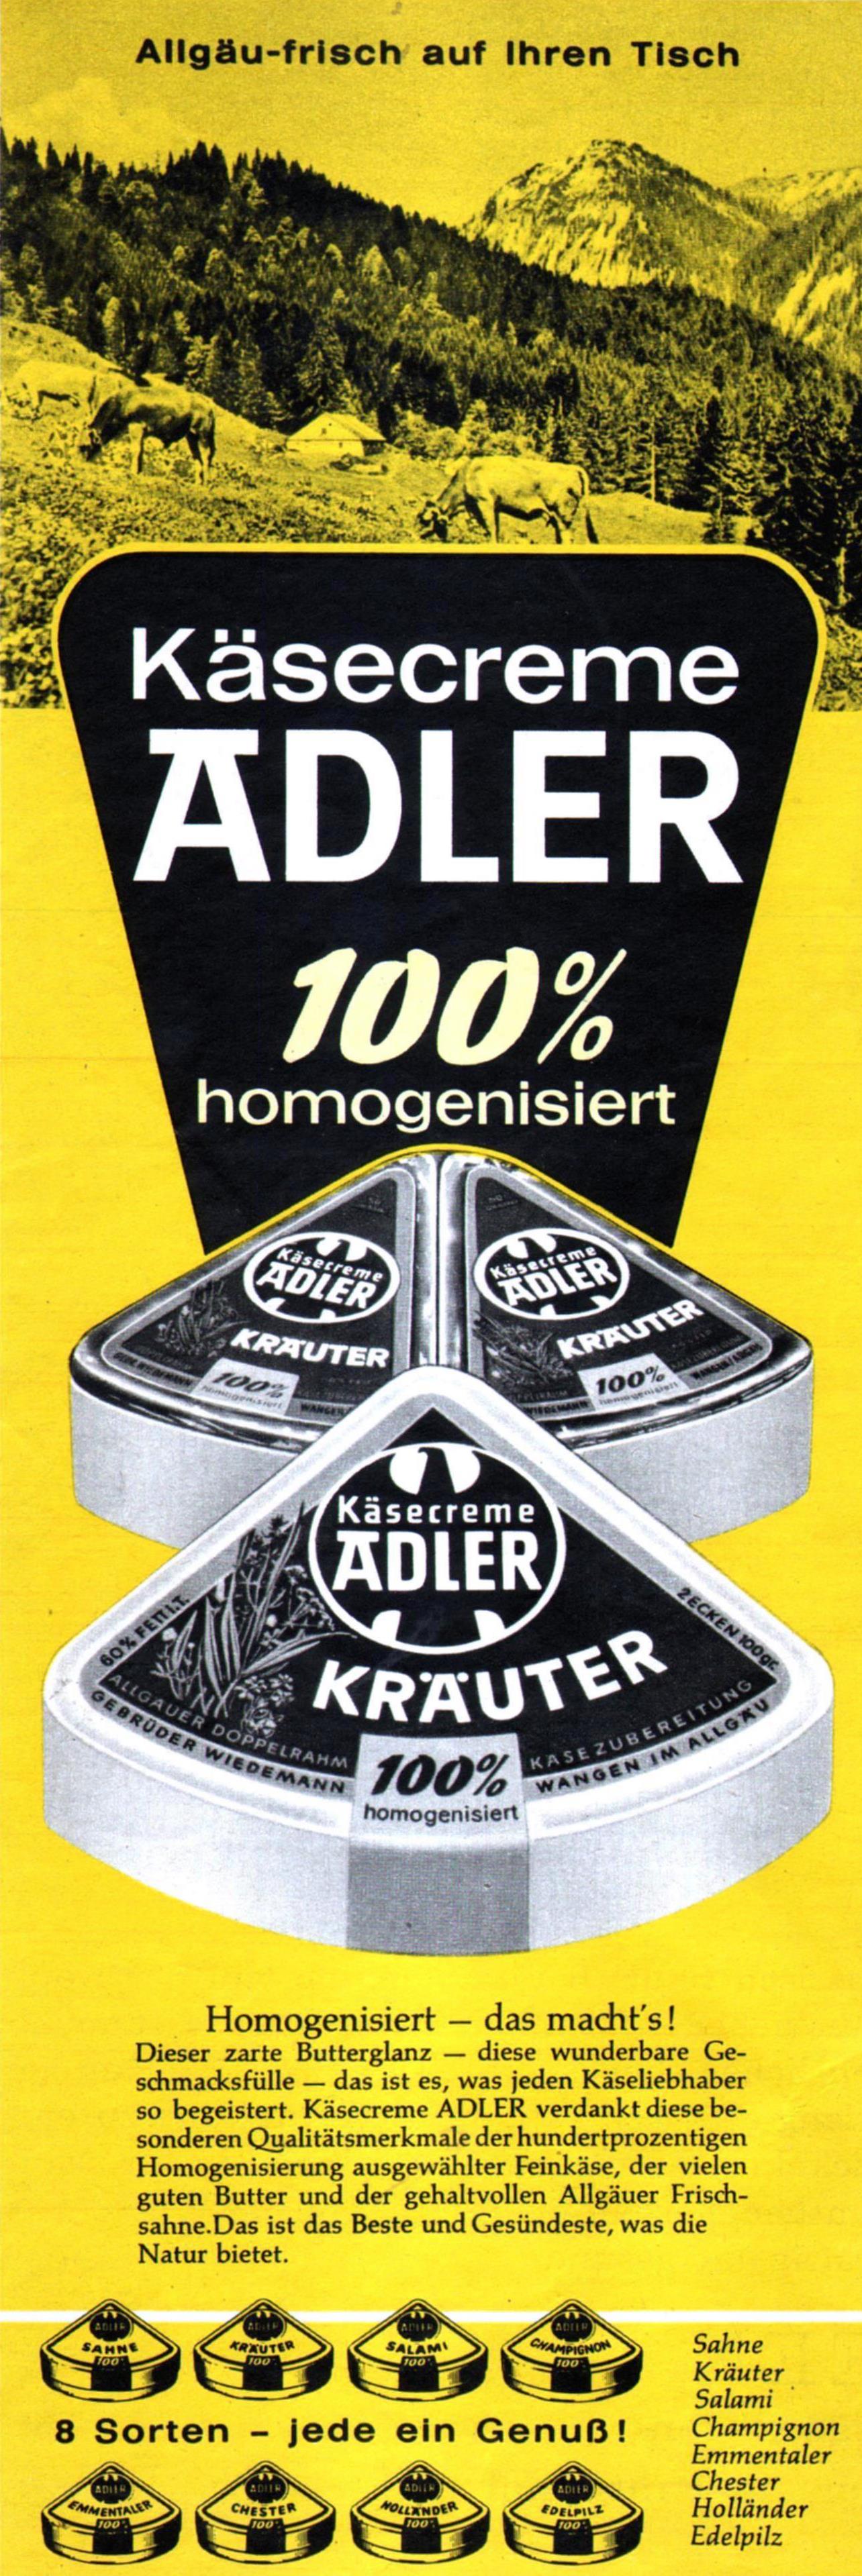 Adler Kaesecreme 1961 133.jpg